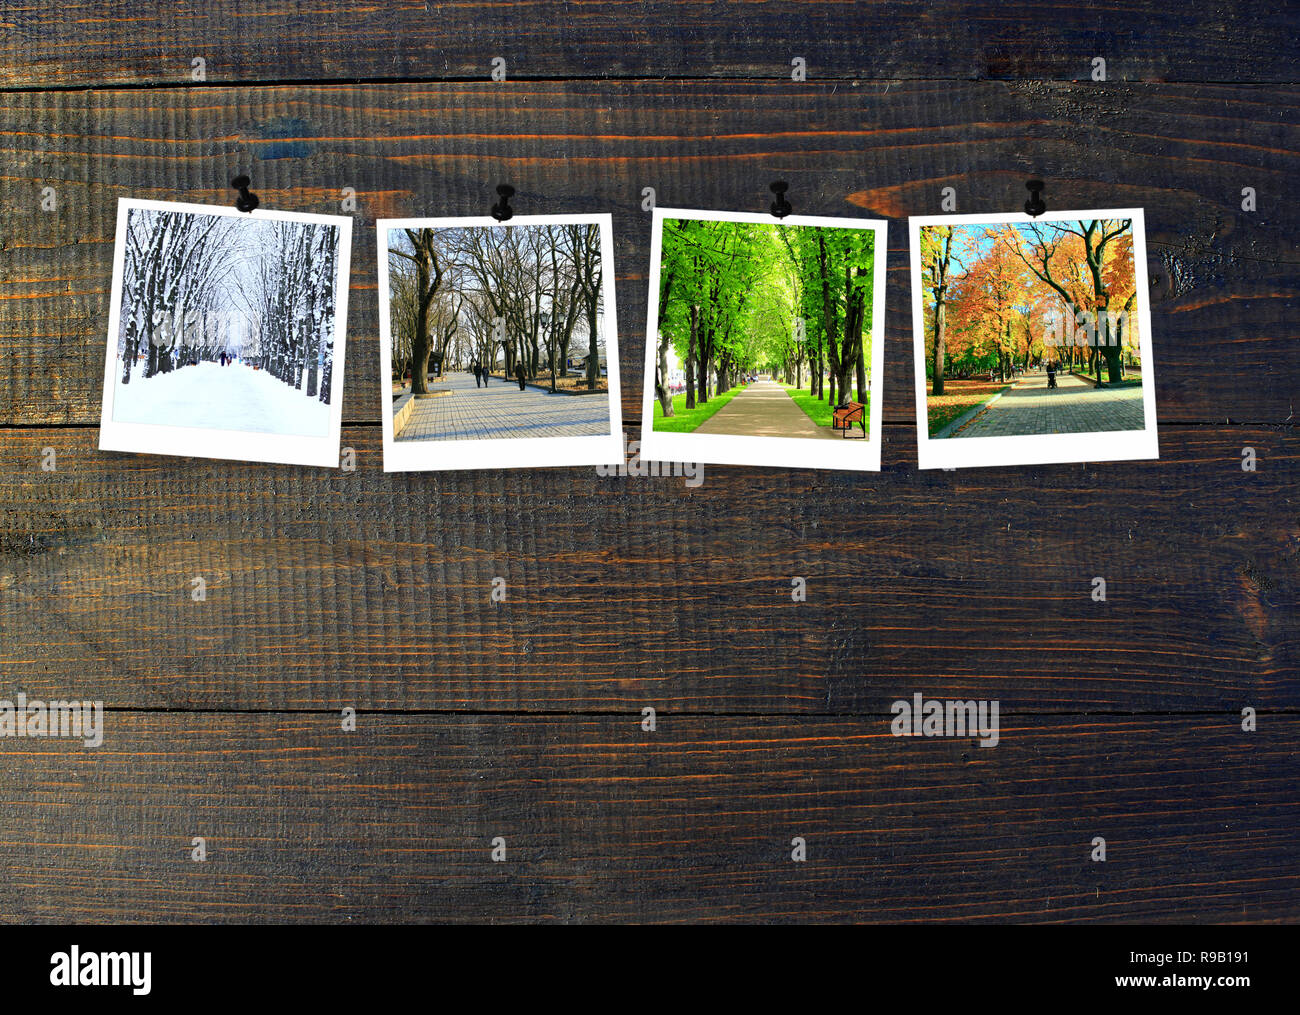 Vier Jahreszeiten auf Holz- Hintergrund. Fotos von vier Jahreszeiten zu dunklem Holz Wand befestigt. Vier Fotos von der gleichen Park zu verschiedenen Zeiten des Jahres gemacht. Dif Stockfoto